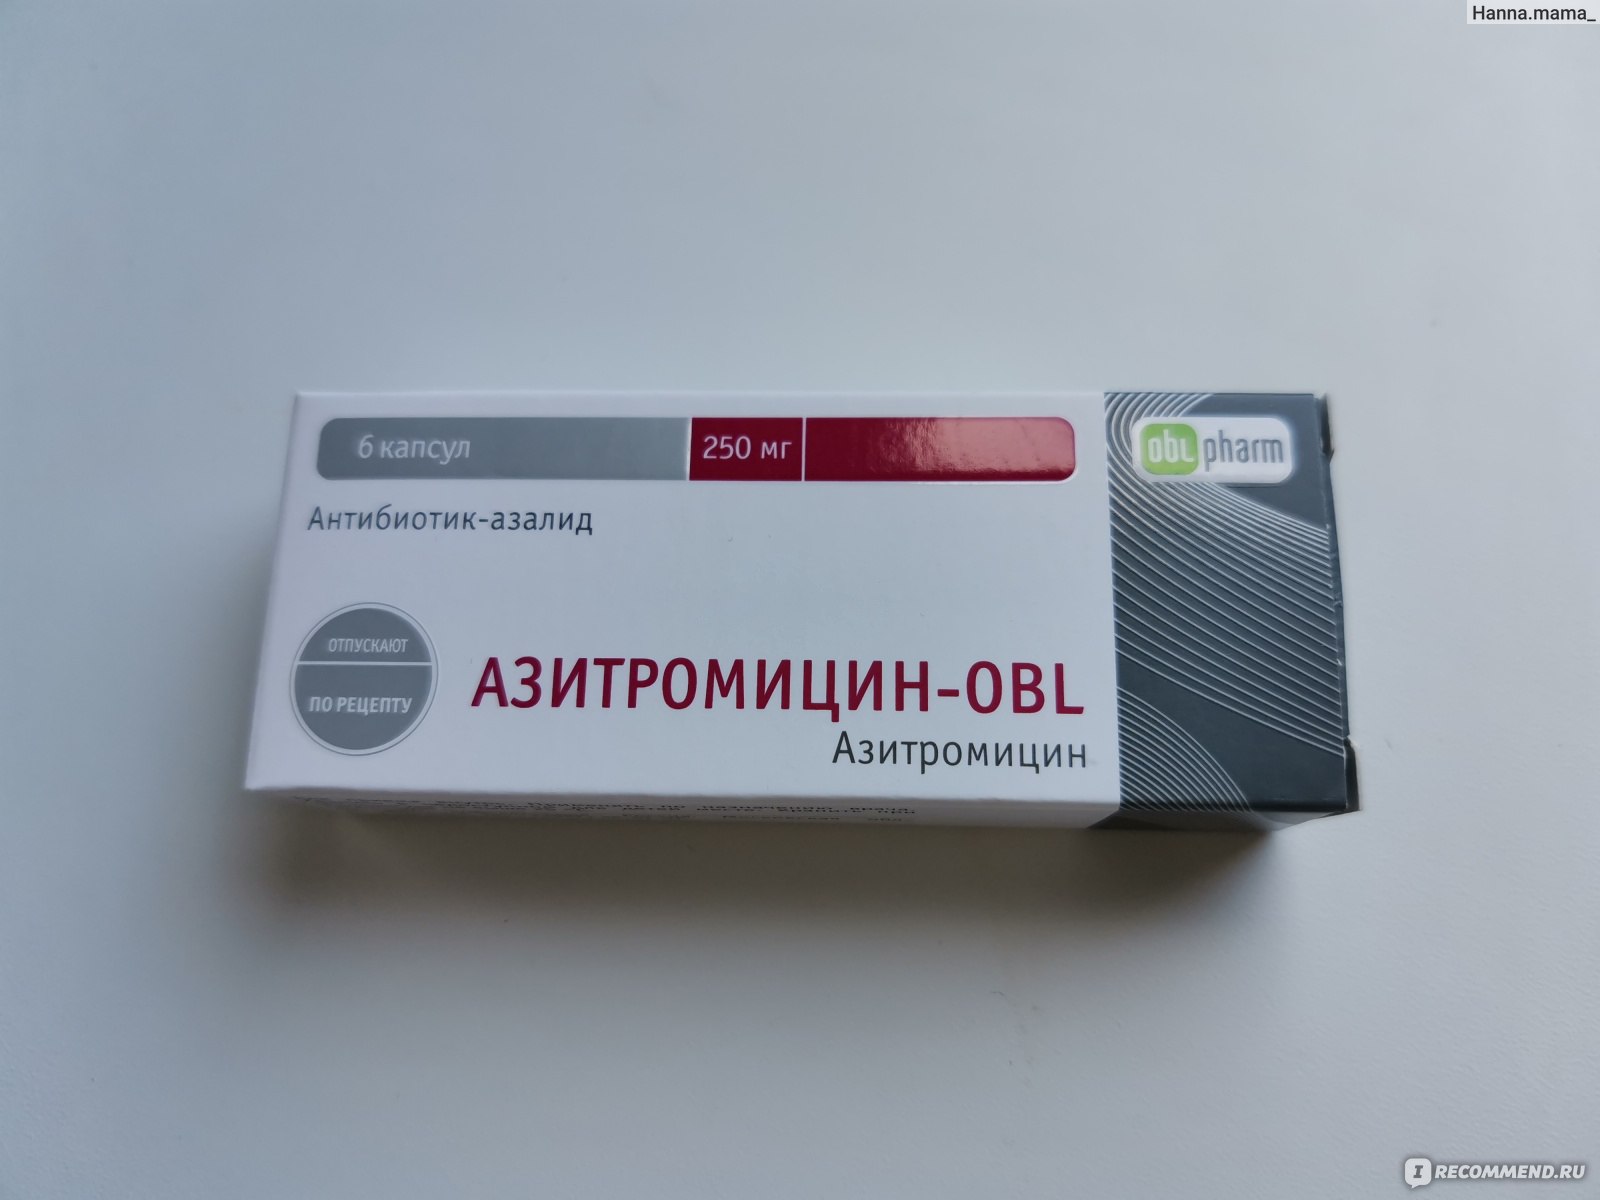 Антибиотик Oblpharm Азитромицин Форте-OBL - «Азитромицин против .